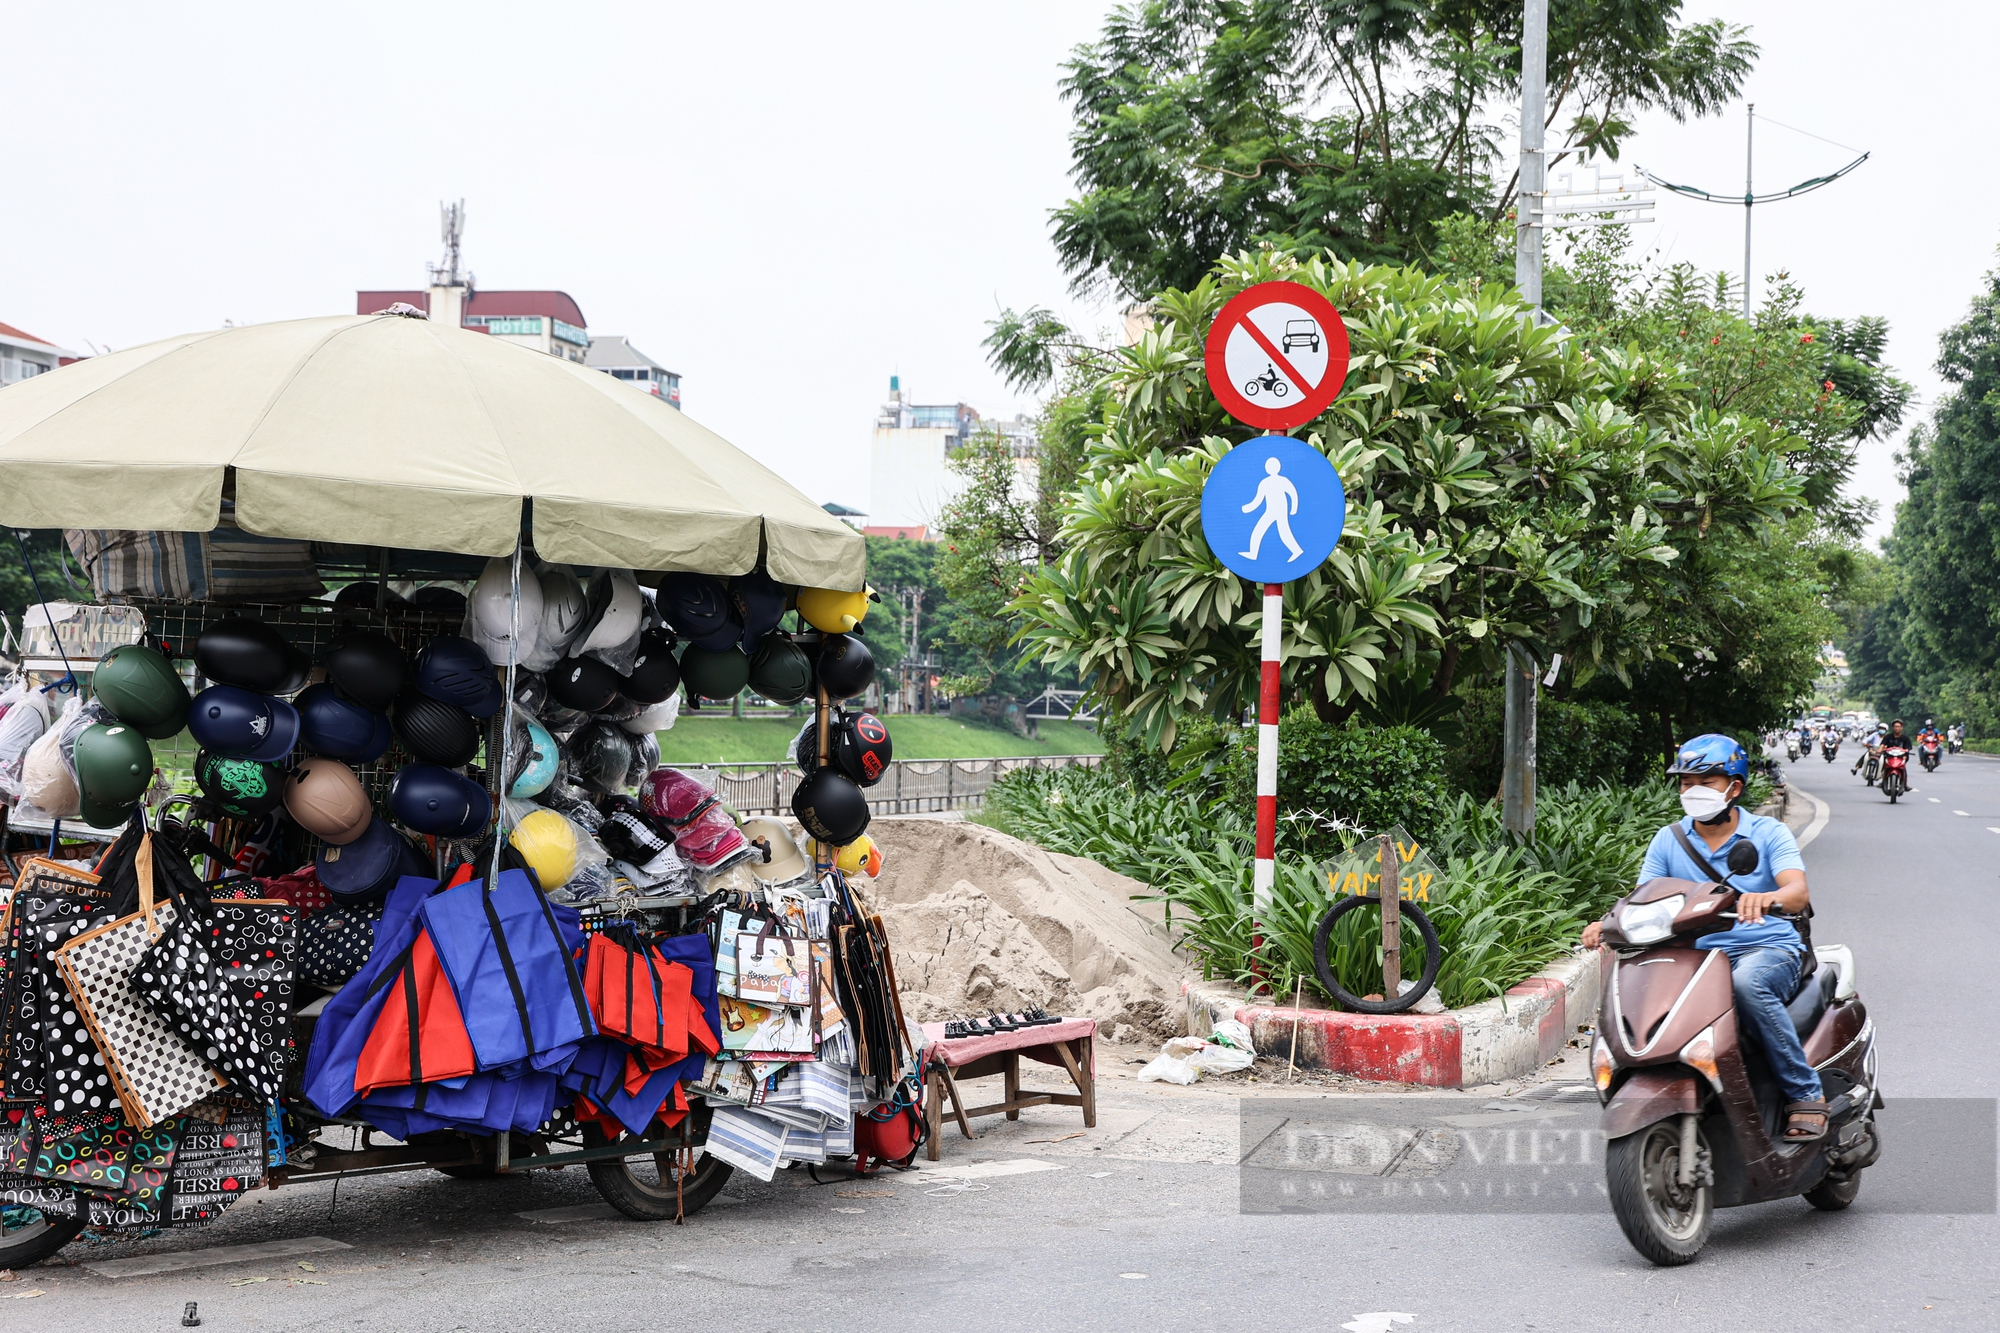 Đường đi bộ 64 tỉ đồng ven sông Tô Lịch thành nơi tập kết hàng rong, rác thải - Ảnh 6.